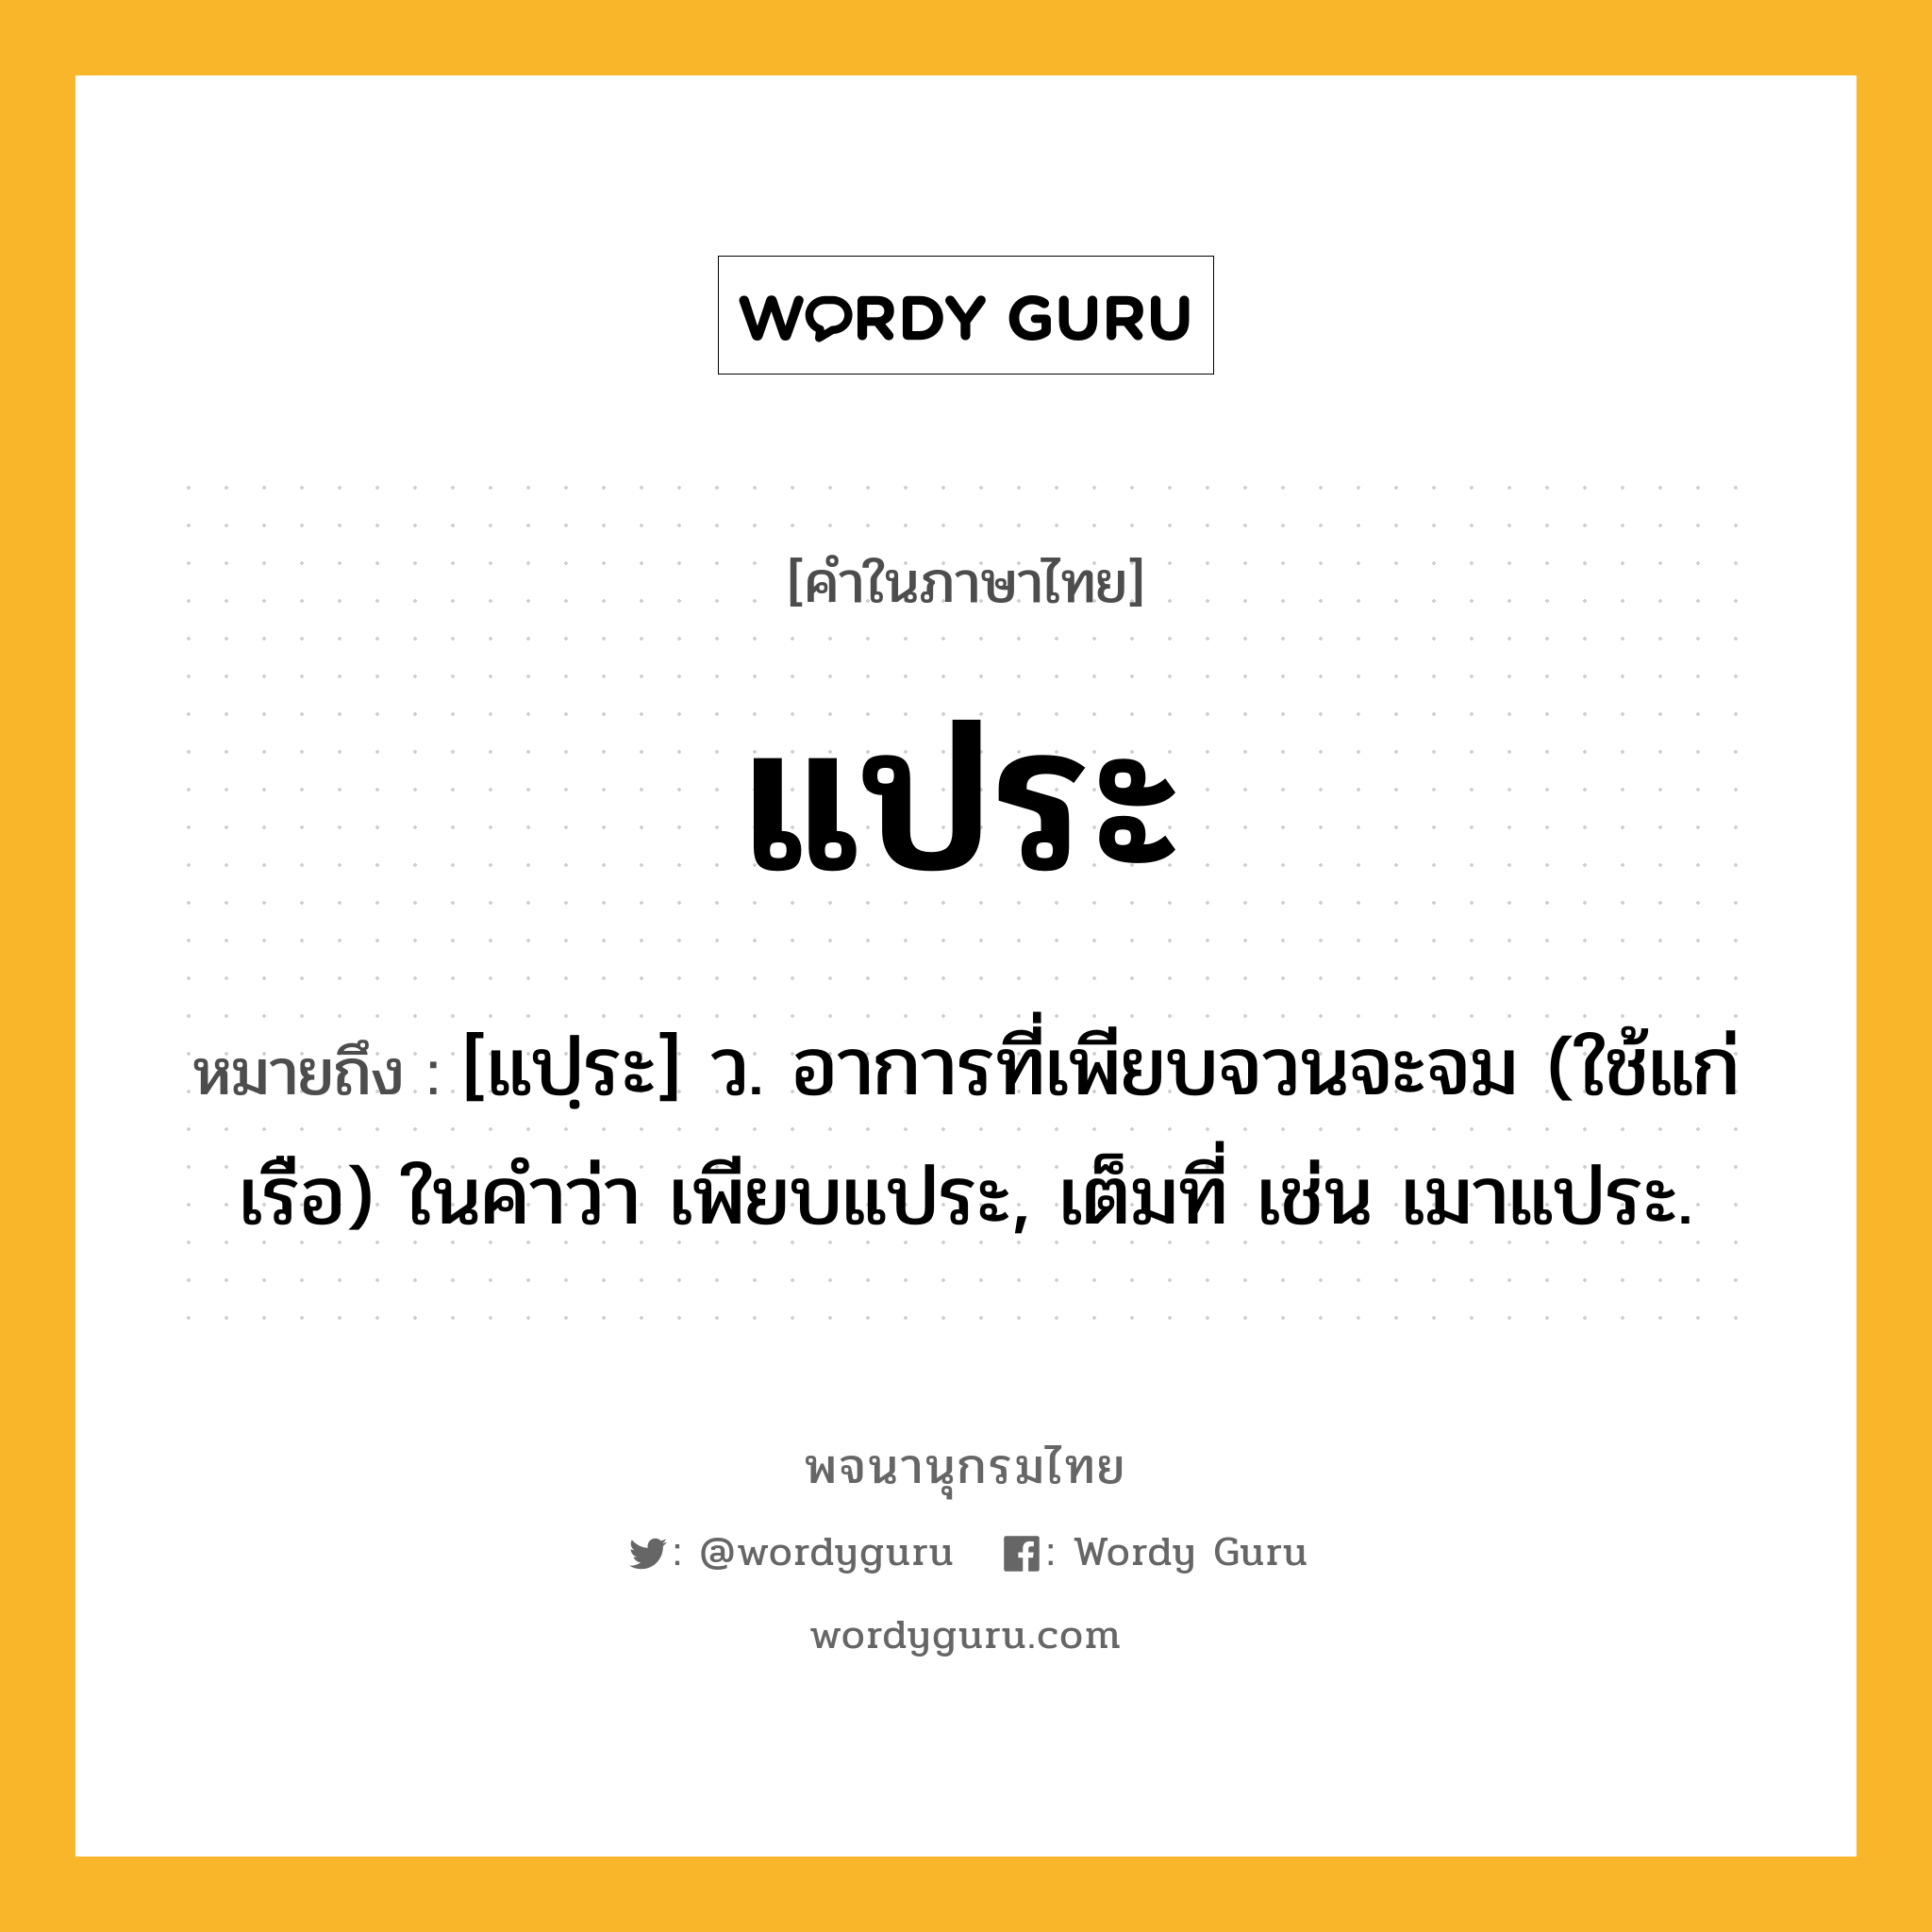 แประ ความหมาย หมายถึงอะไร?, คำในภาษาไทย แประ หมายถึง [แปฺระ] ว. อาการที่เพียบจวนจะจม (ใช้แก่เรือ) ในคำว่า เพียบแประ, เต็มที่ เช่น เมาแประ.